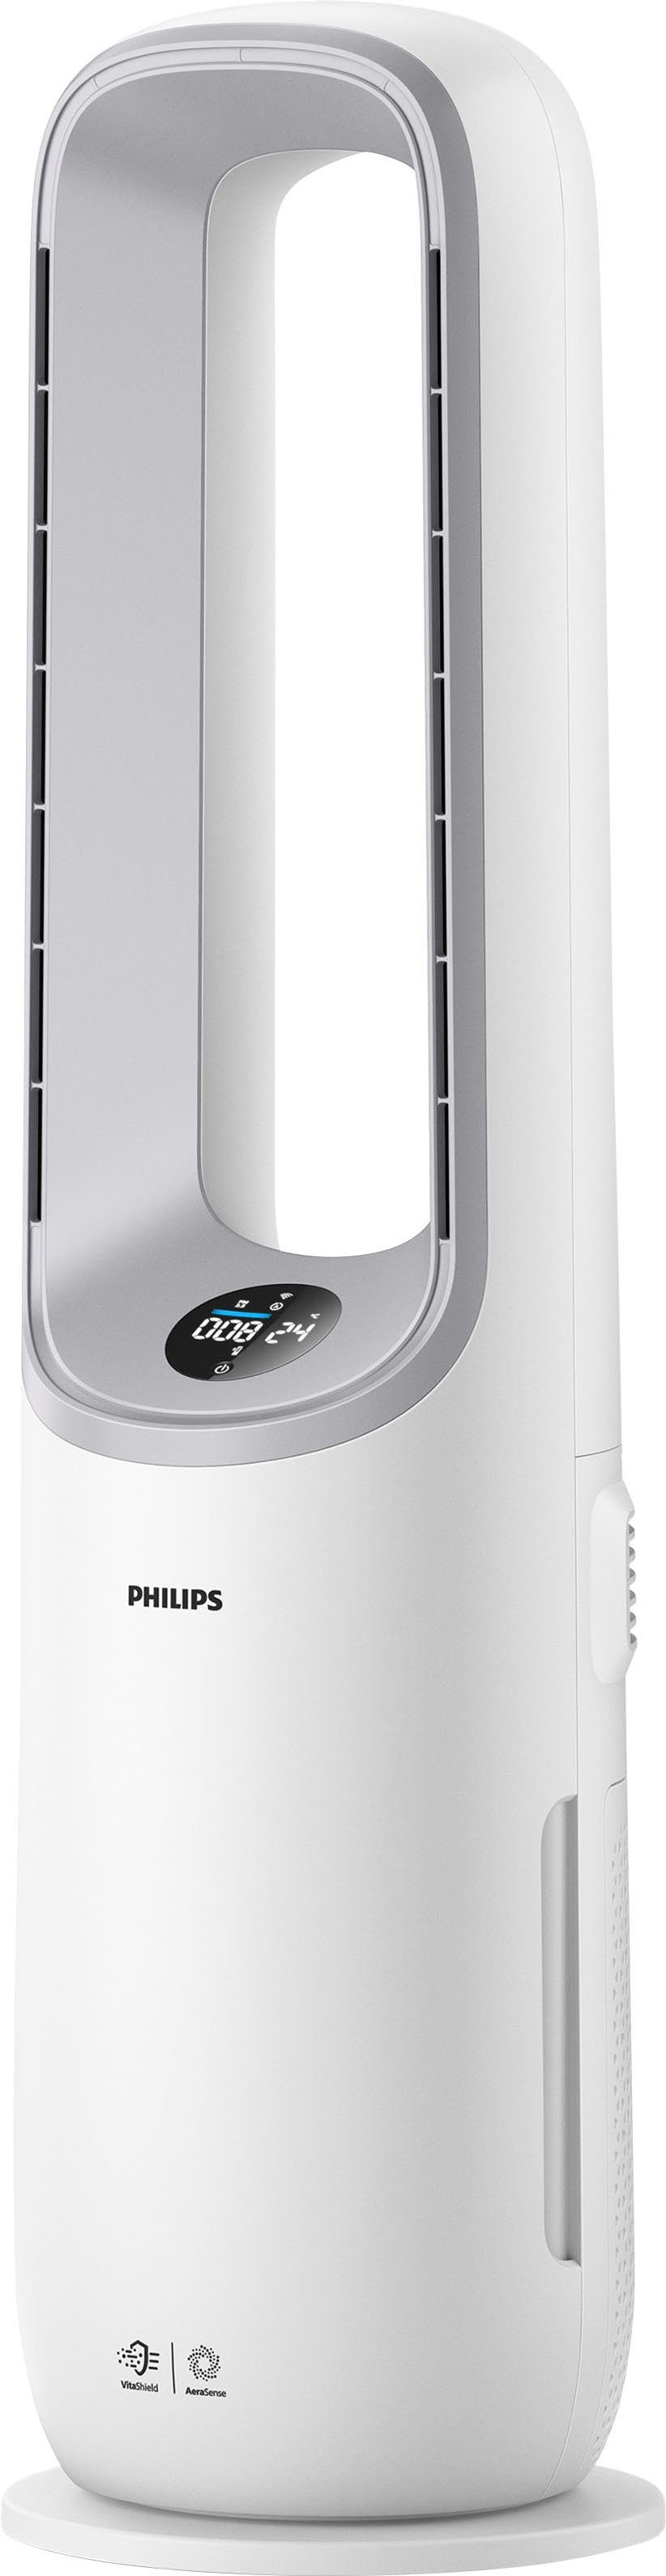 Philips Luftreiniger AMF765/10 Air Performer 7000 Serie, für 70 m² Räume,  mit 2-in-1 mit Kühlfunktion, für Allergiker geeignet